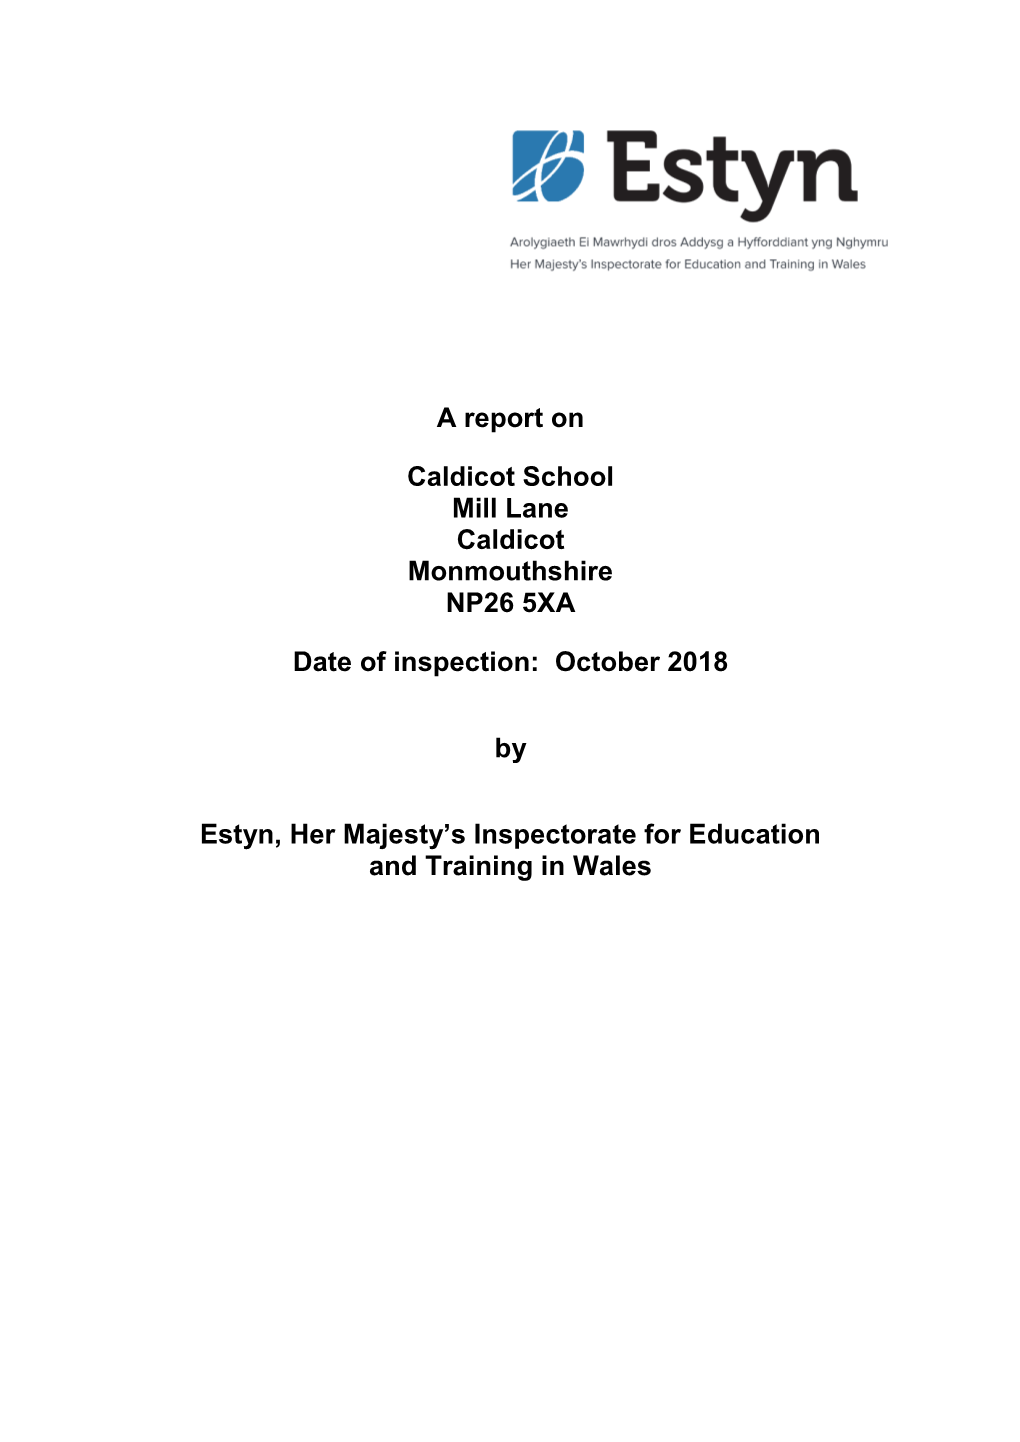 Inspection Report Caldicot School 2018